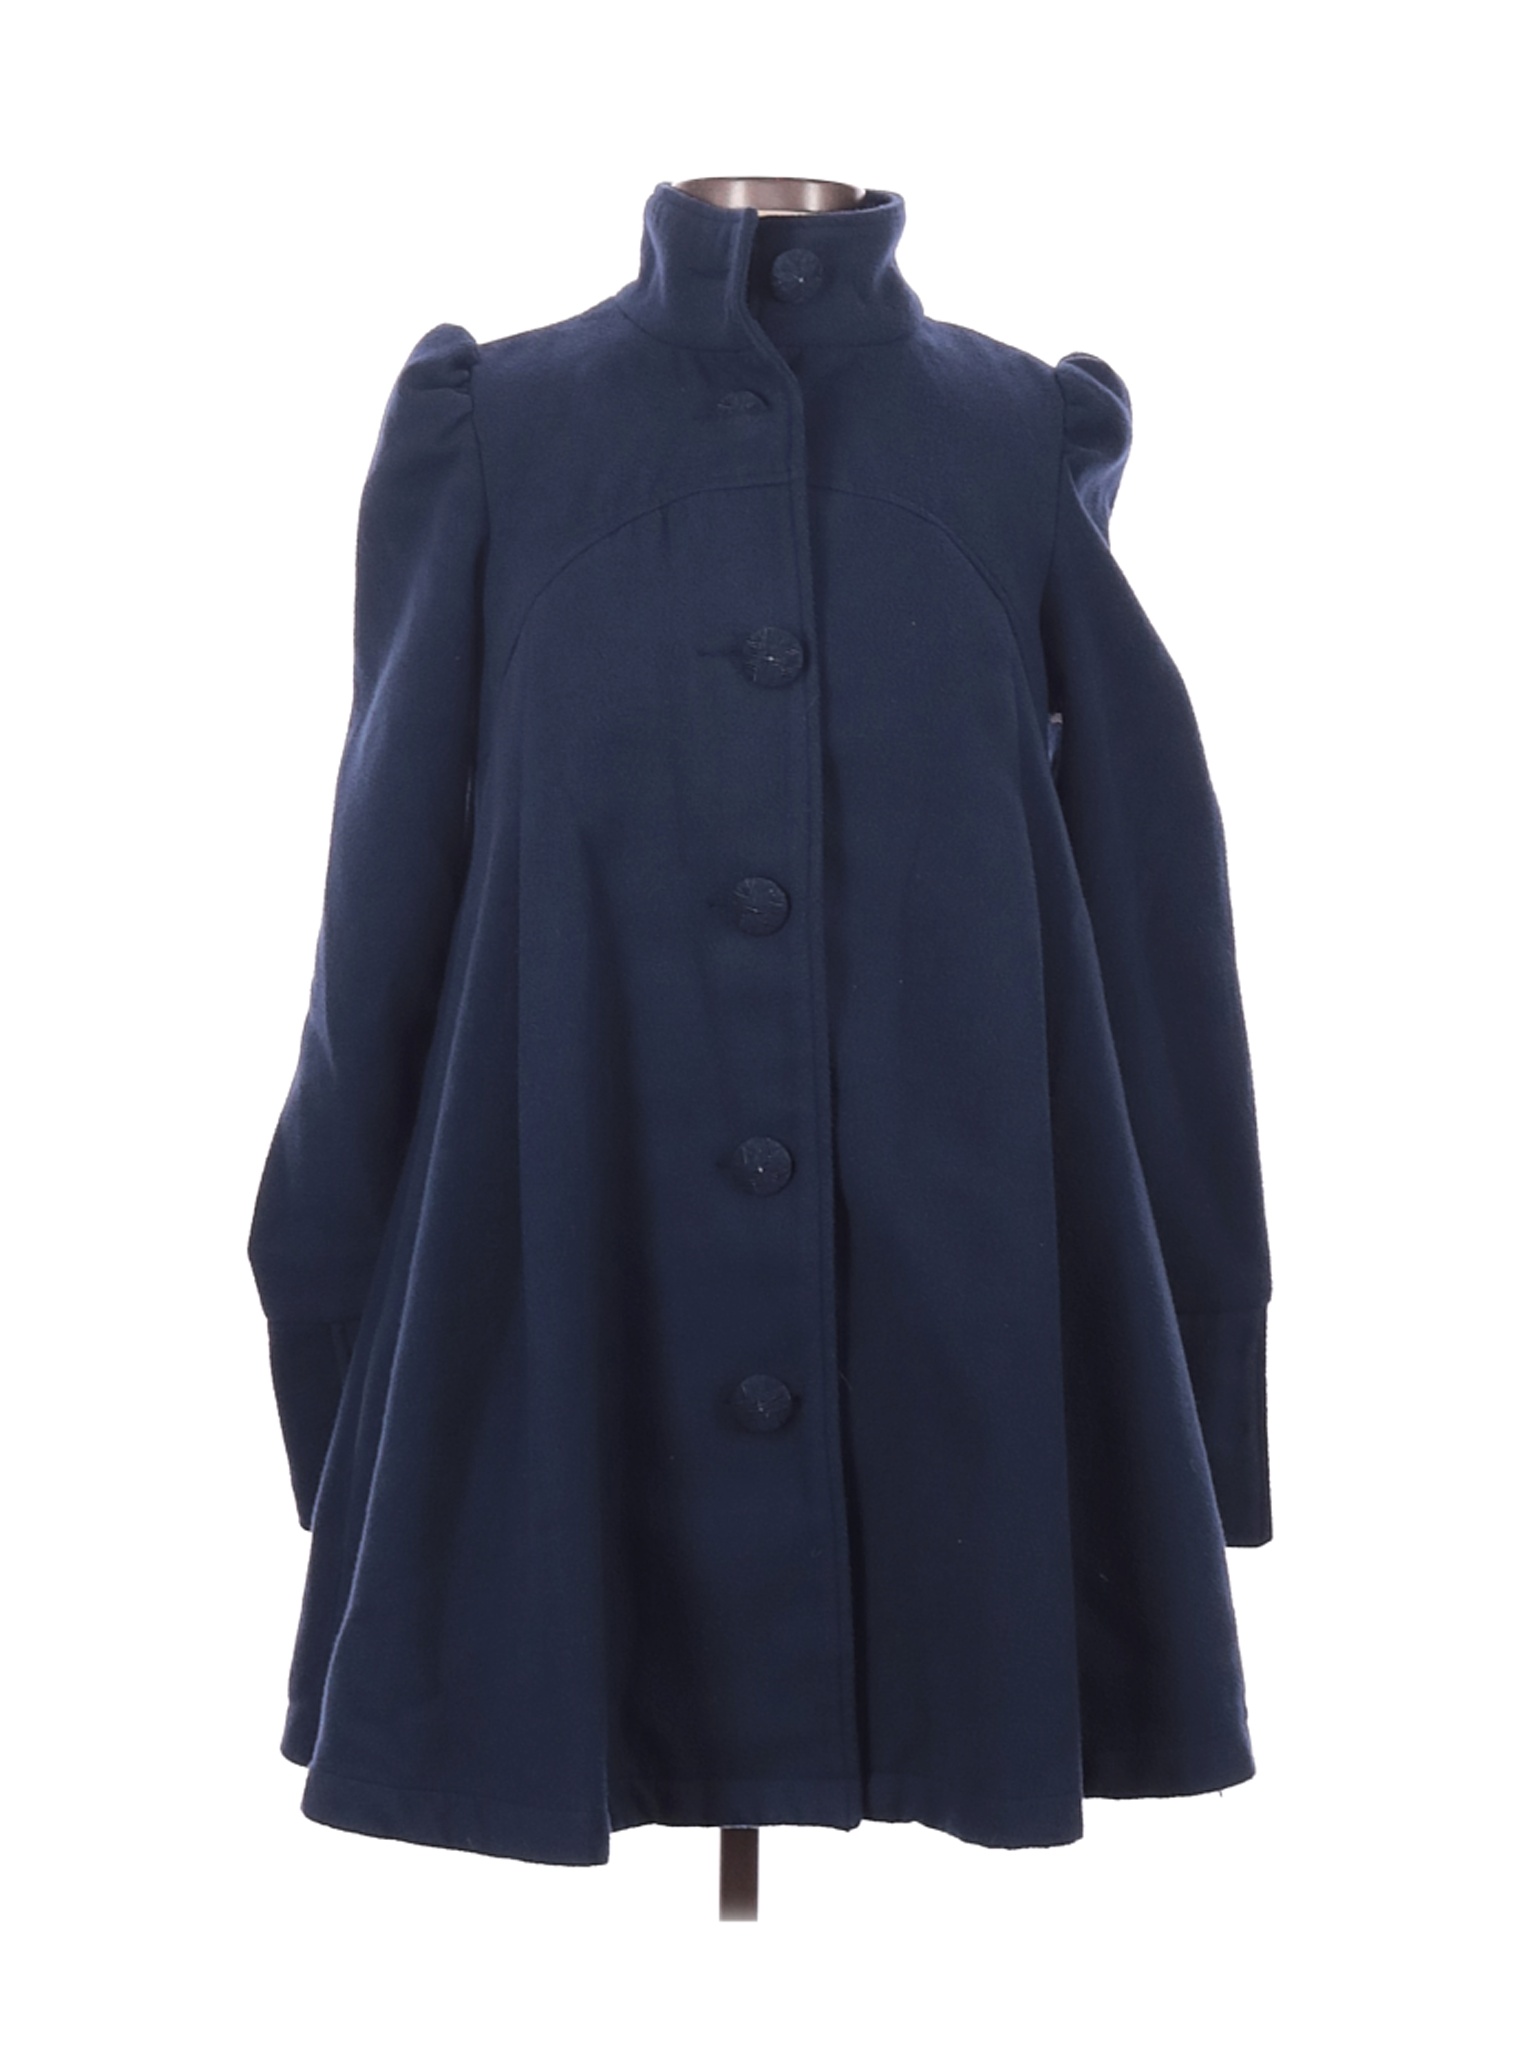 Free People Women Blue Coat 4 | eBay